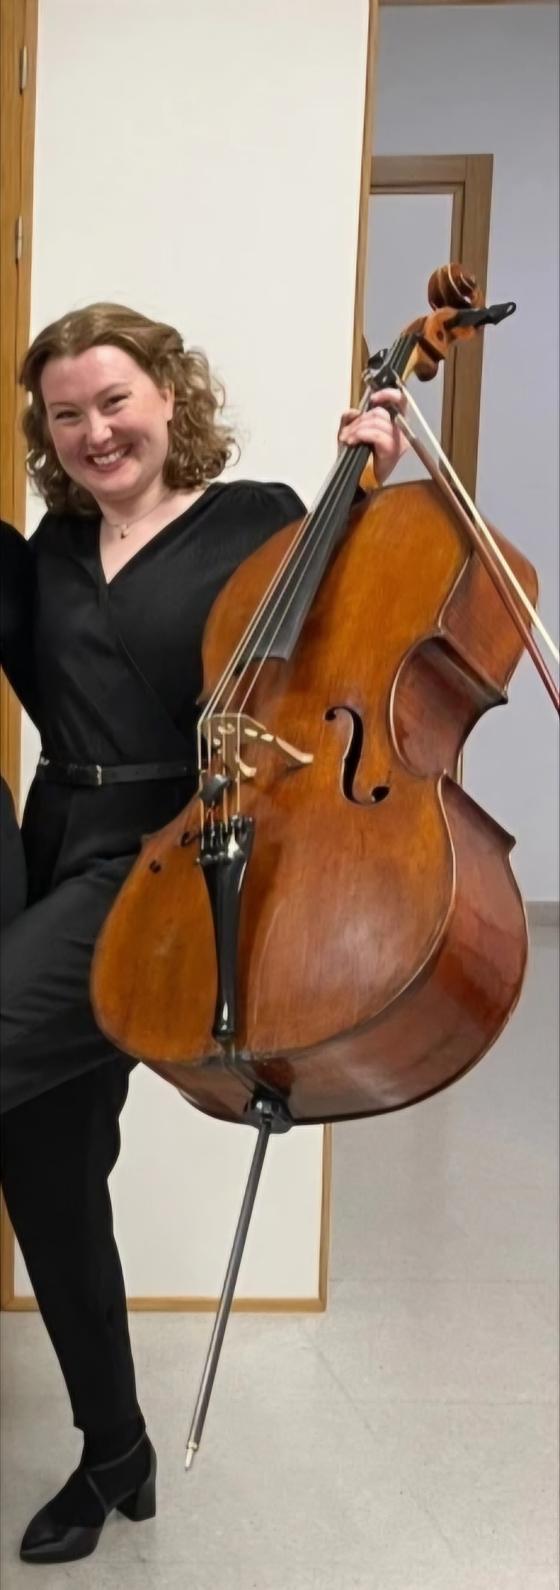 Bilde av Mildrid med cello